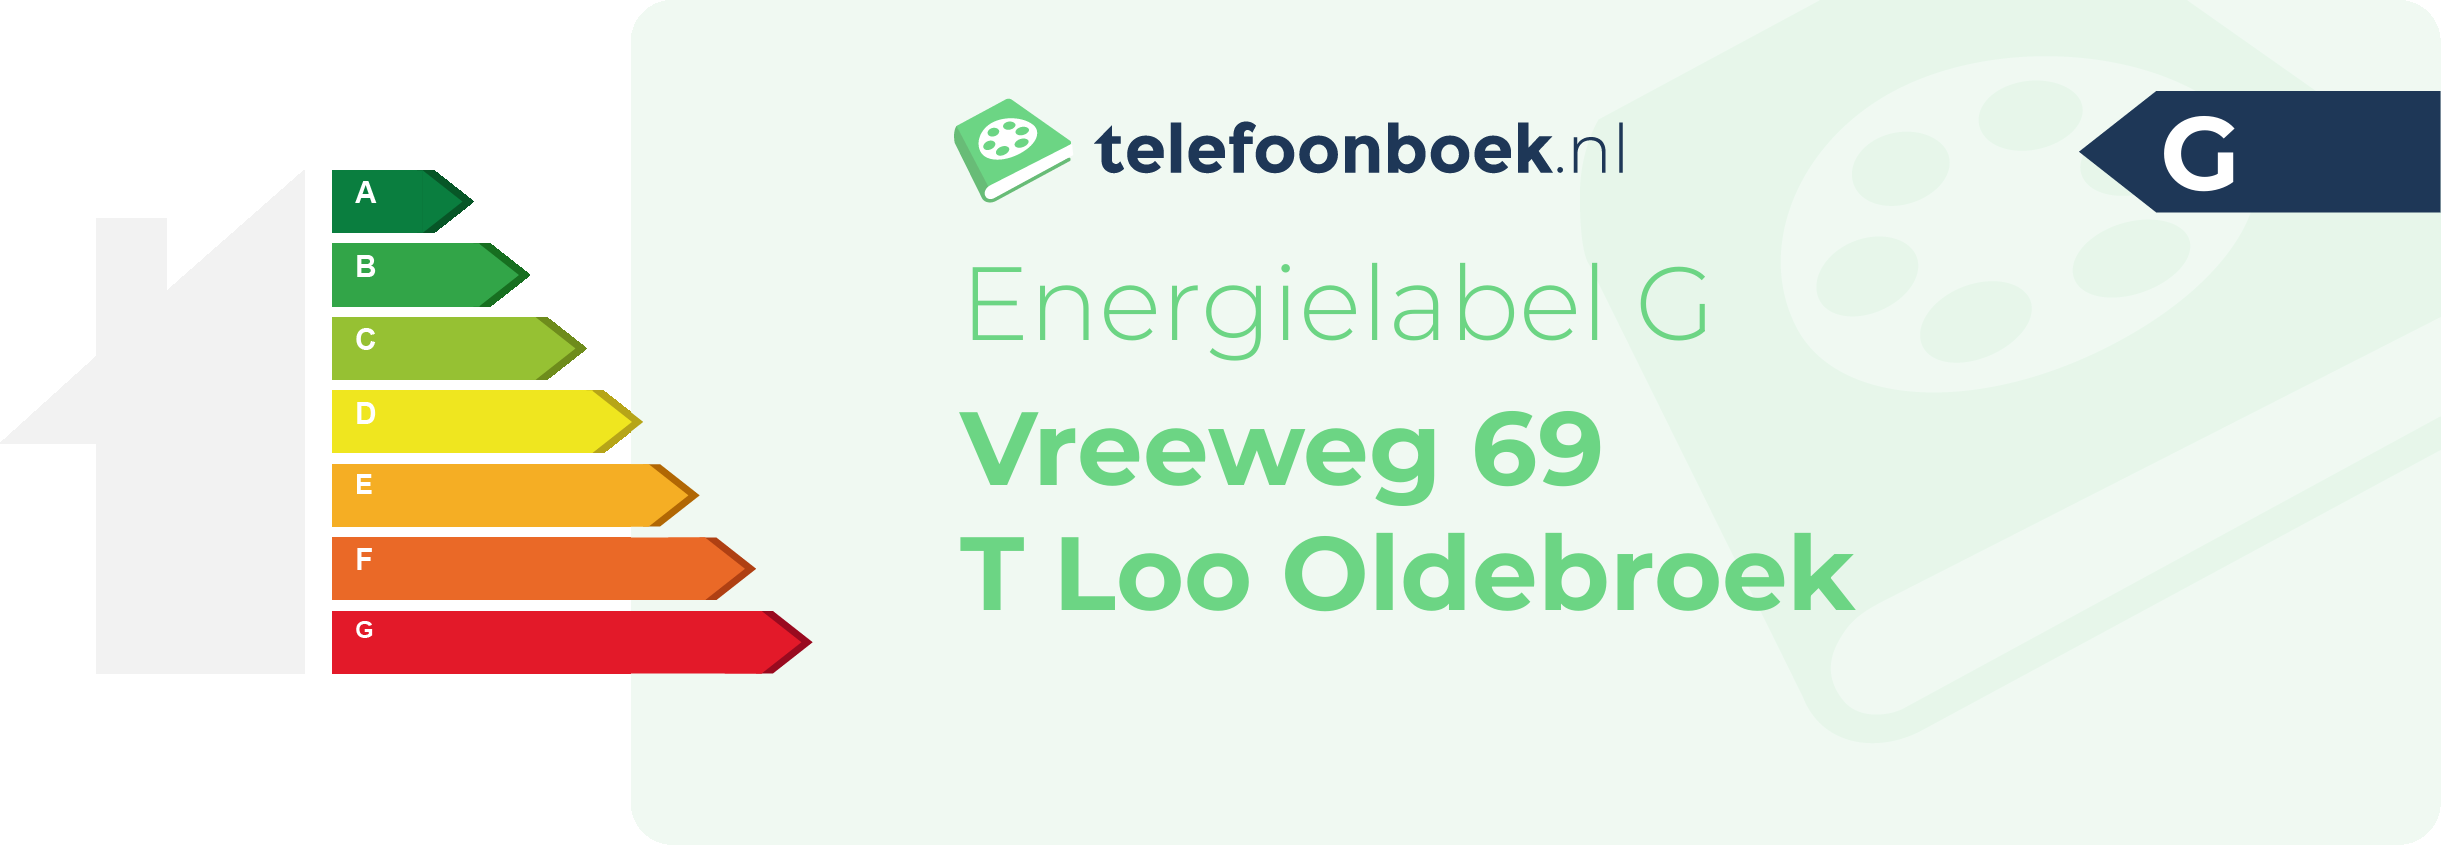 Energielabel Vreeweg 69 T Loo Oldebroek